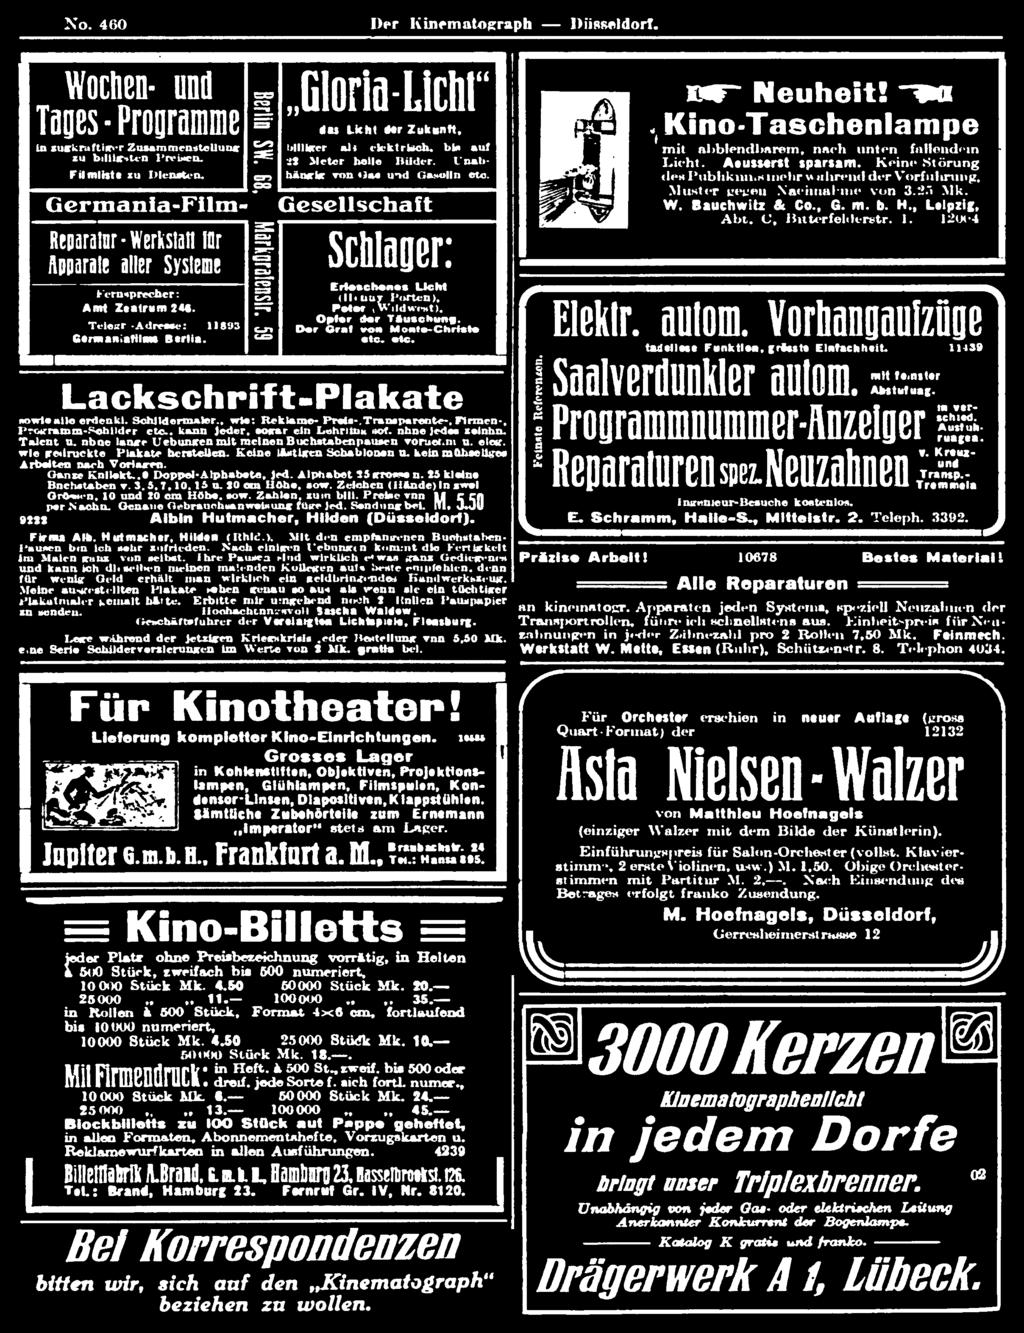 Mette, Esten (Ruhr). Schützen-tr. 8. Telephon 4034. Für Kinotheater!